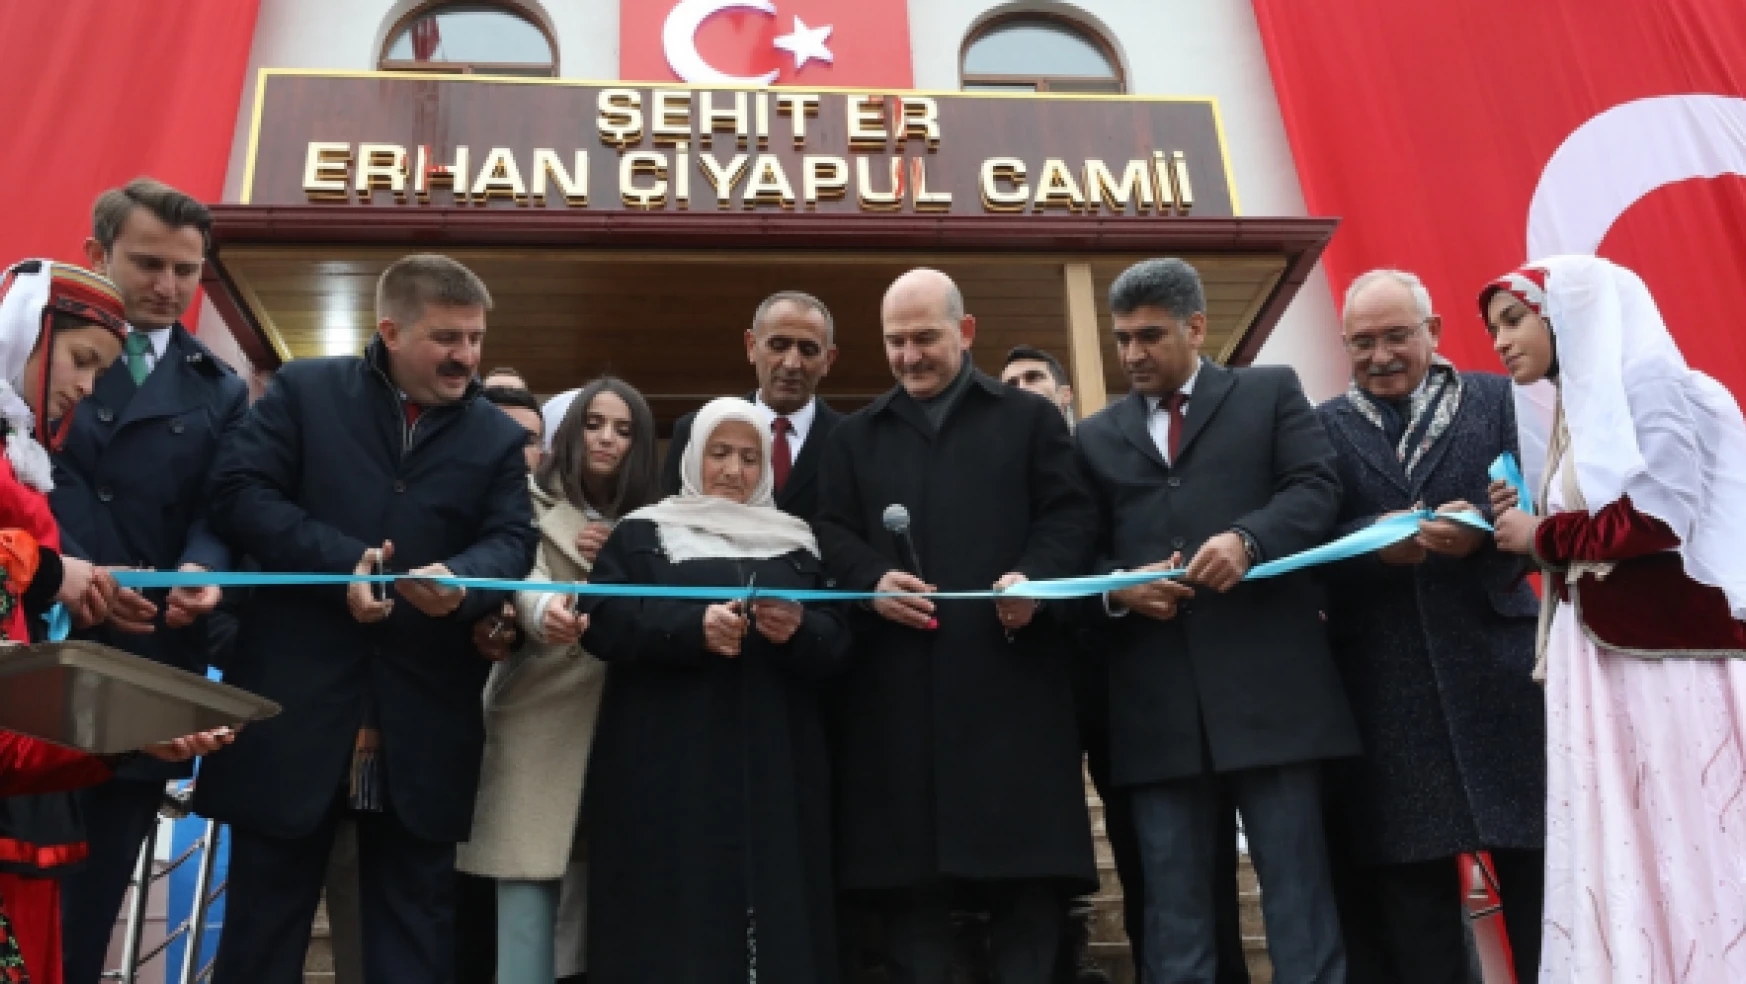 Aralık'ta Şehir Er Erhan Çiyapul Camii ve Kur'an Kursu'nun açılışı yapıldı